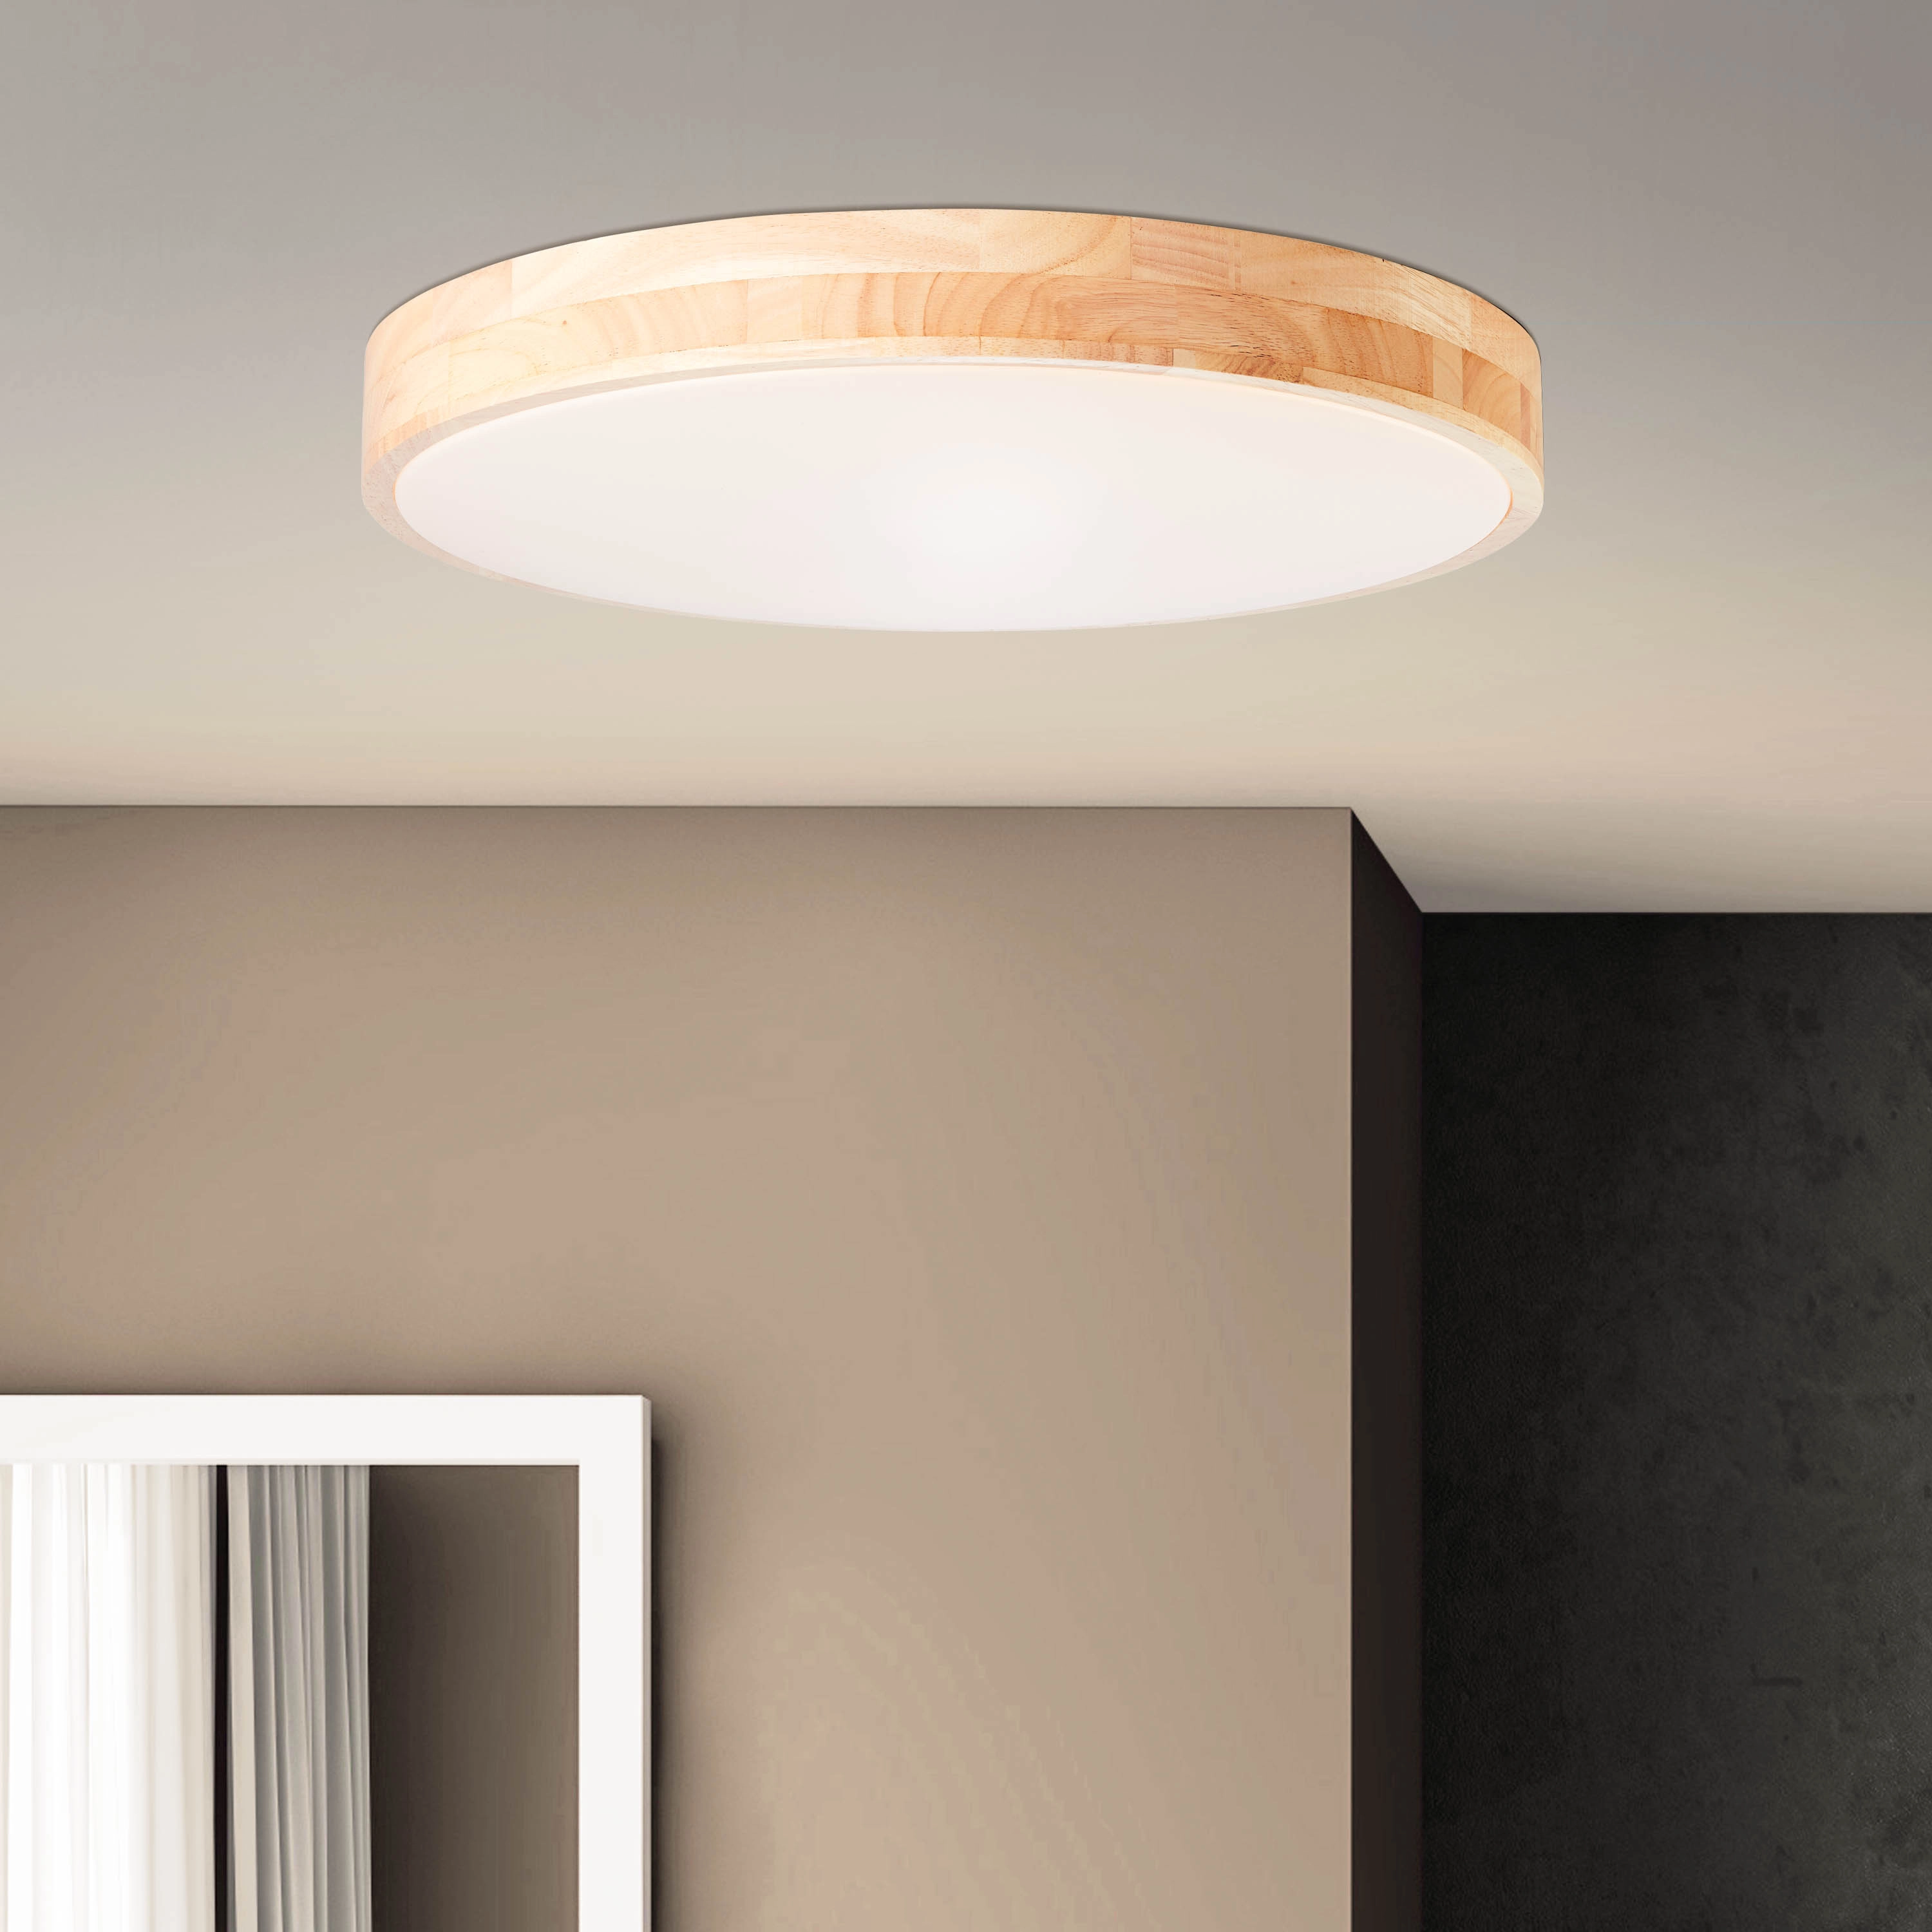 Brilliant LED-Deckenleuchte Slimline Ø 49 cm Holz und Weiß kaufen bei OBI